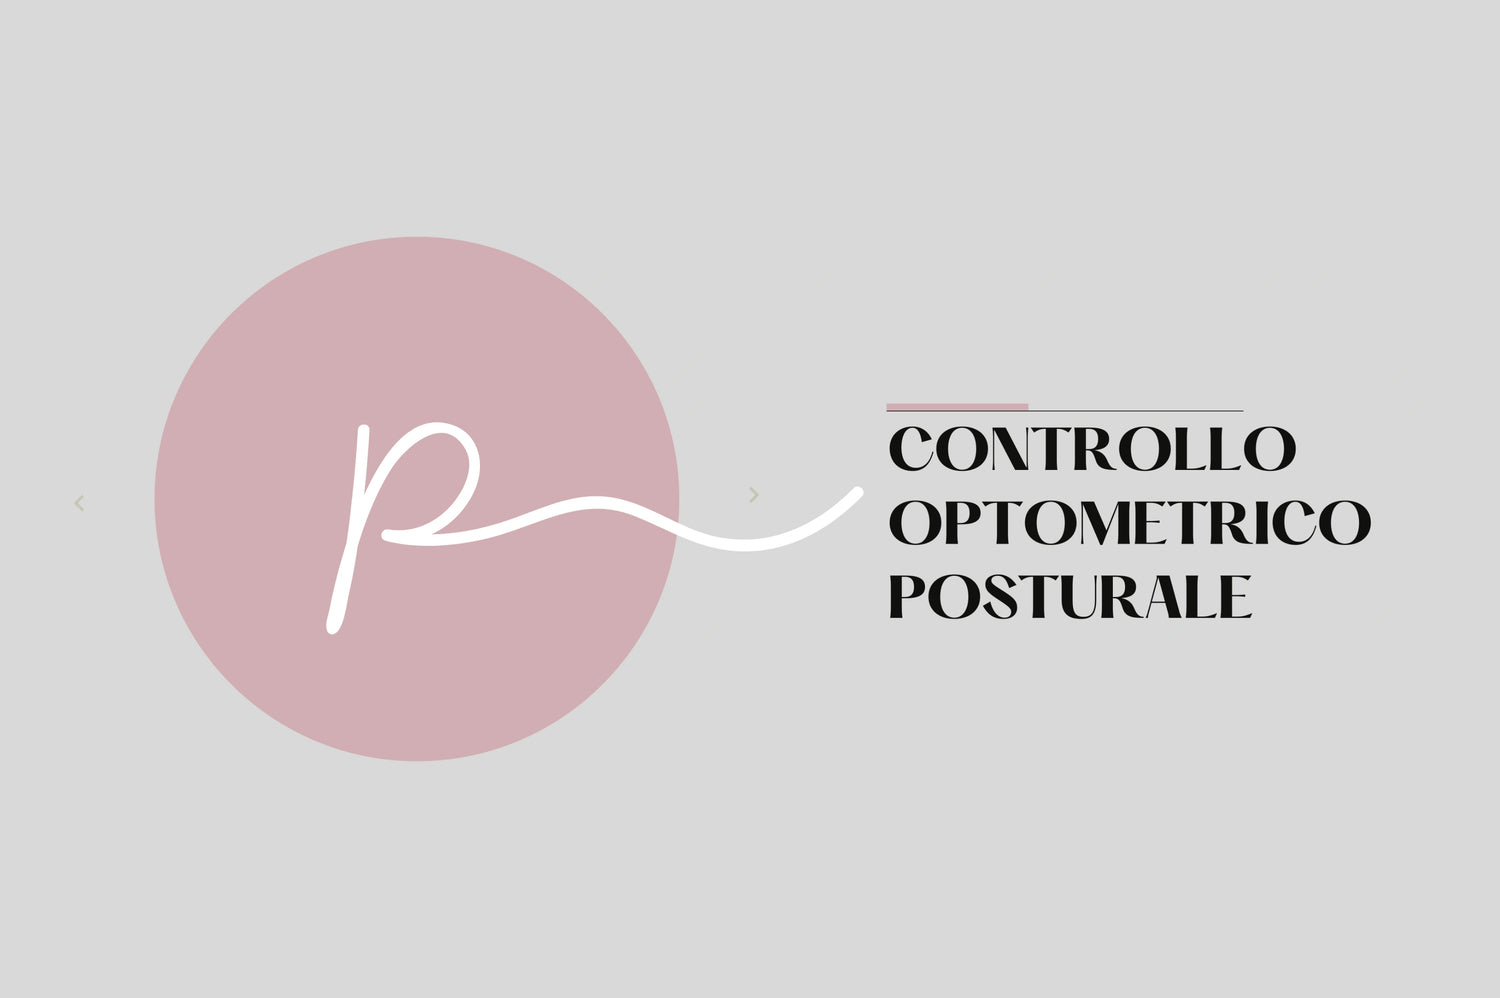 Controllo optometrico posturale ottica Paoletti Pieve di Soligo